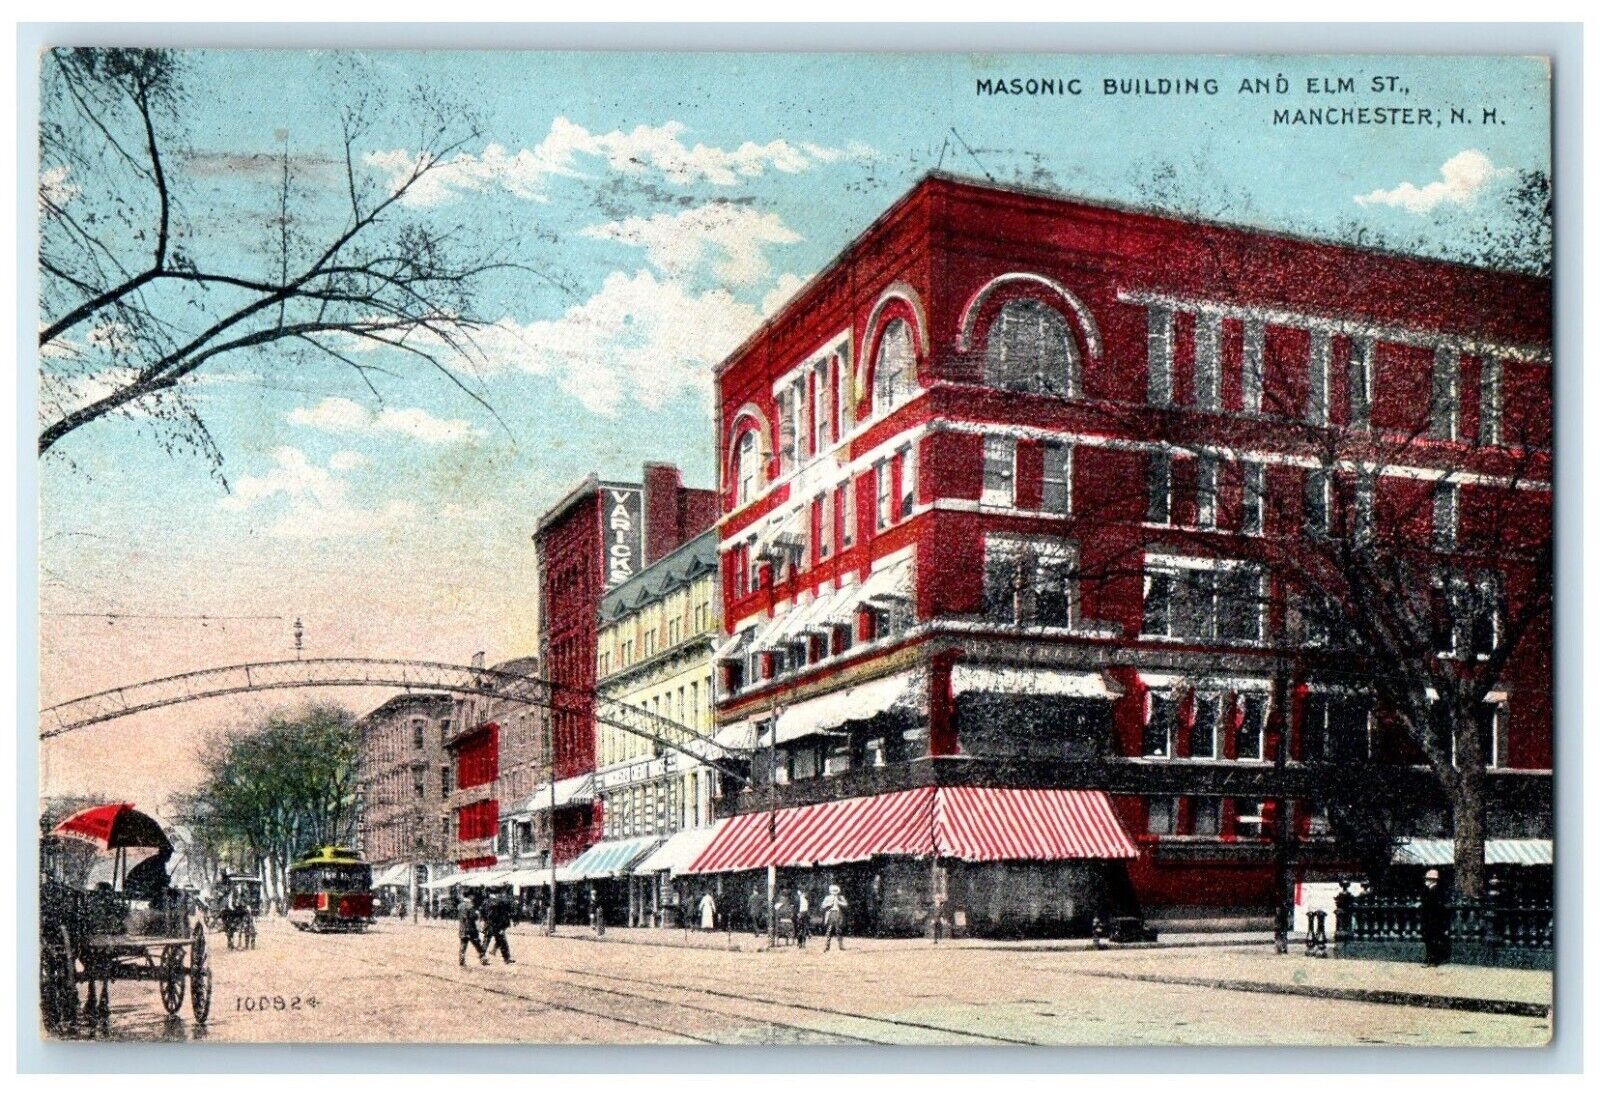 1913 Masonic Building Elm St. Manchester New Hampshire Vintage Antique Postcard